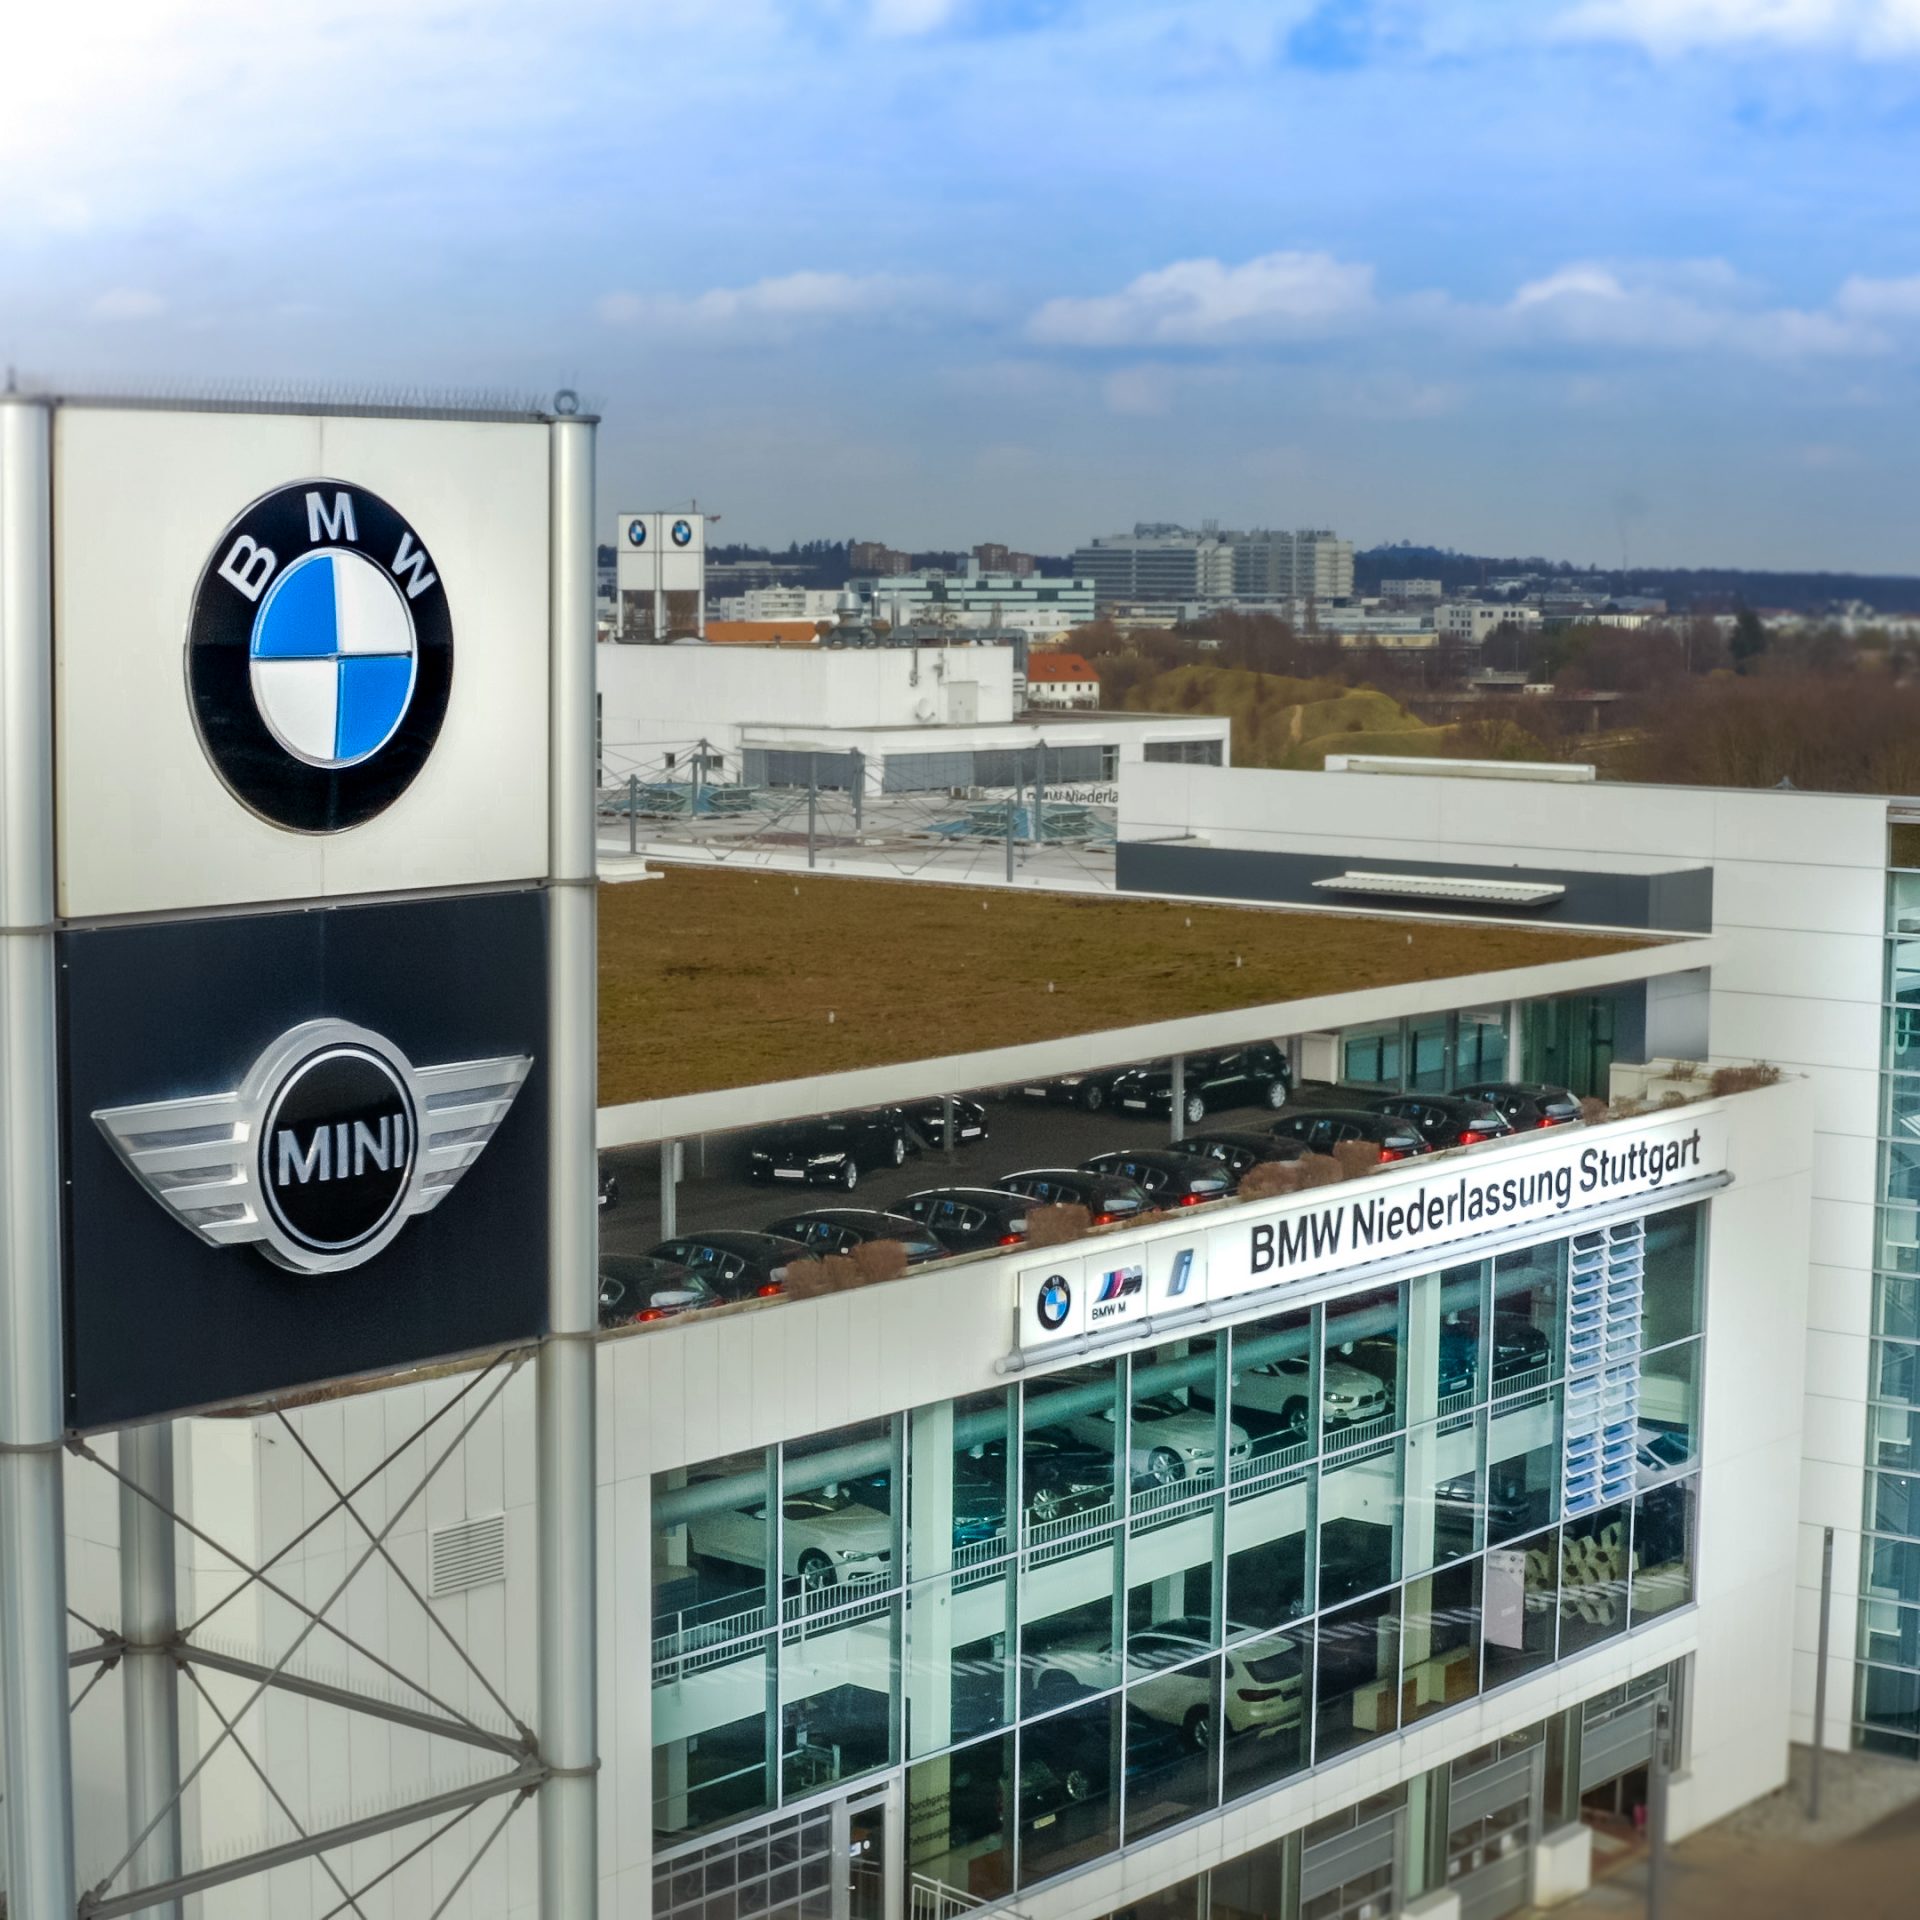 Das Bild zeigt die BMW Niederlassung Stuttgart.